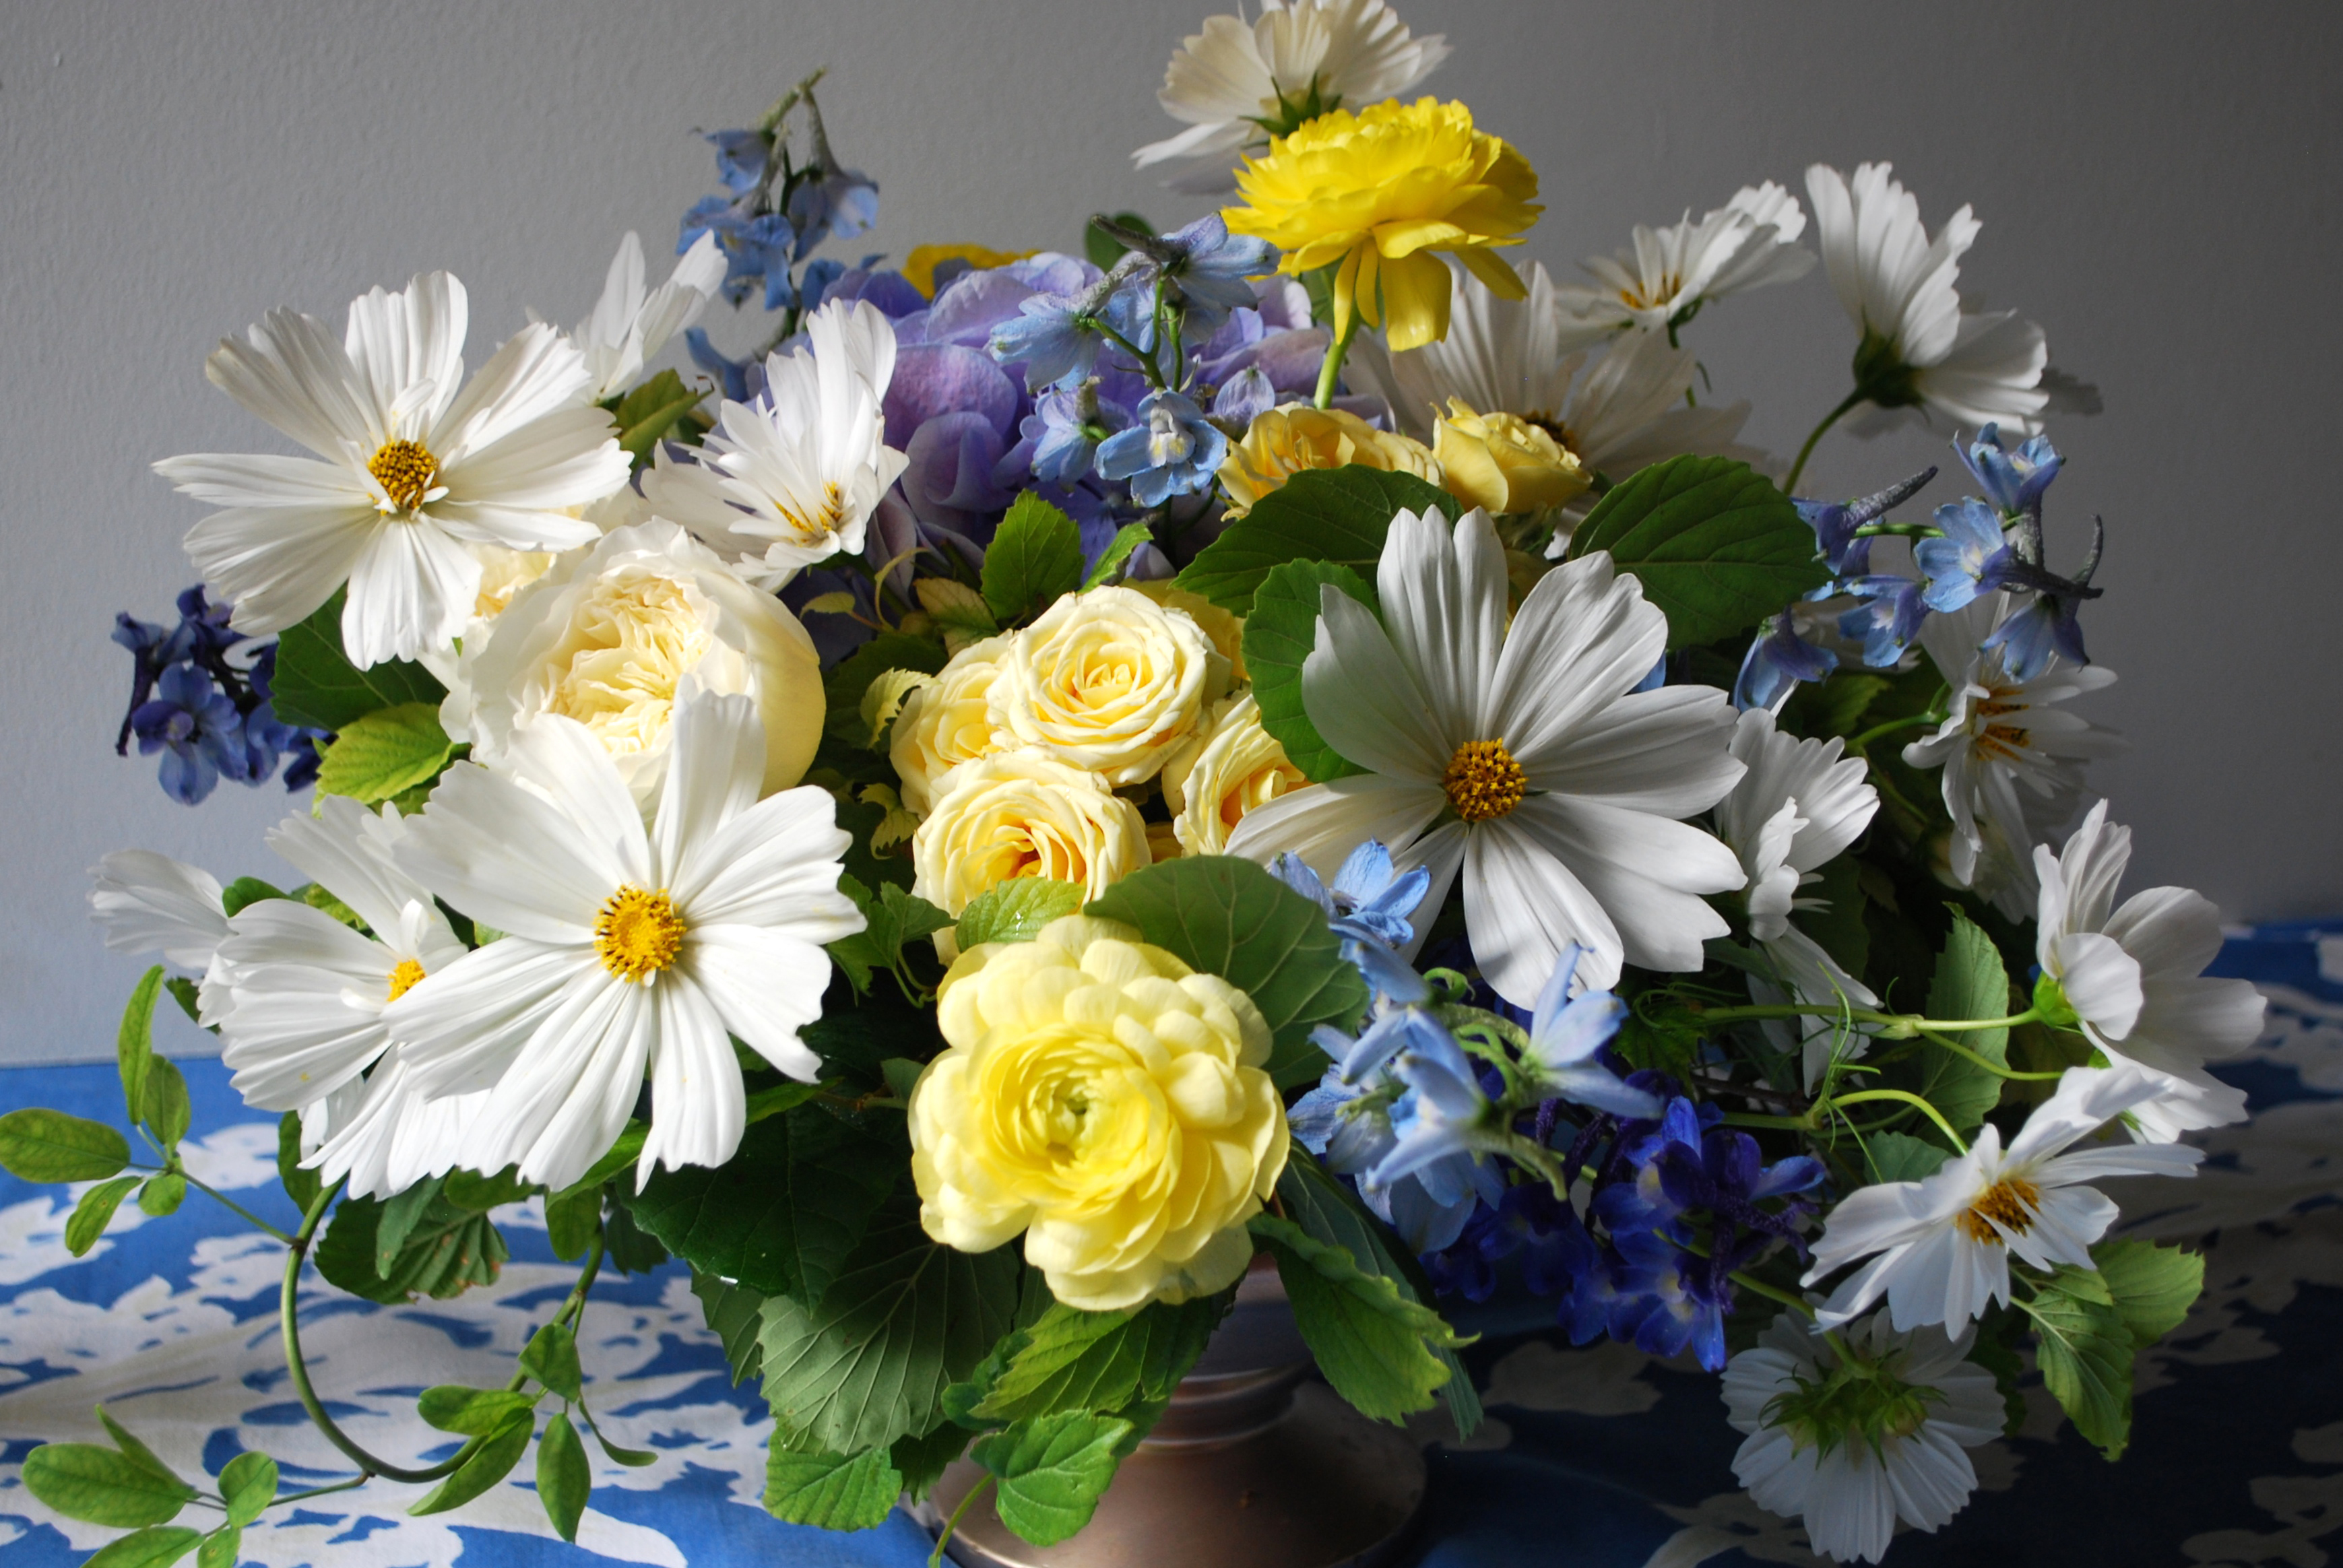 775417 免費下載壁紙 花束, 人造, 插花, 蓝花, 丰富多彩的, 波斯菊, 地球, 白色的花, 黄花 屏保和圖片